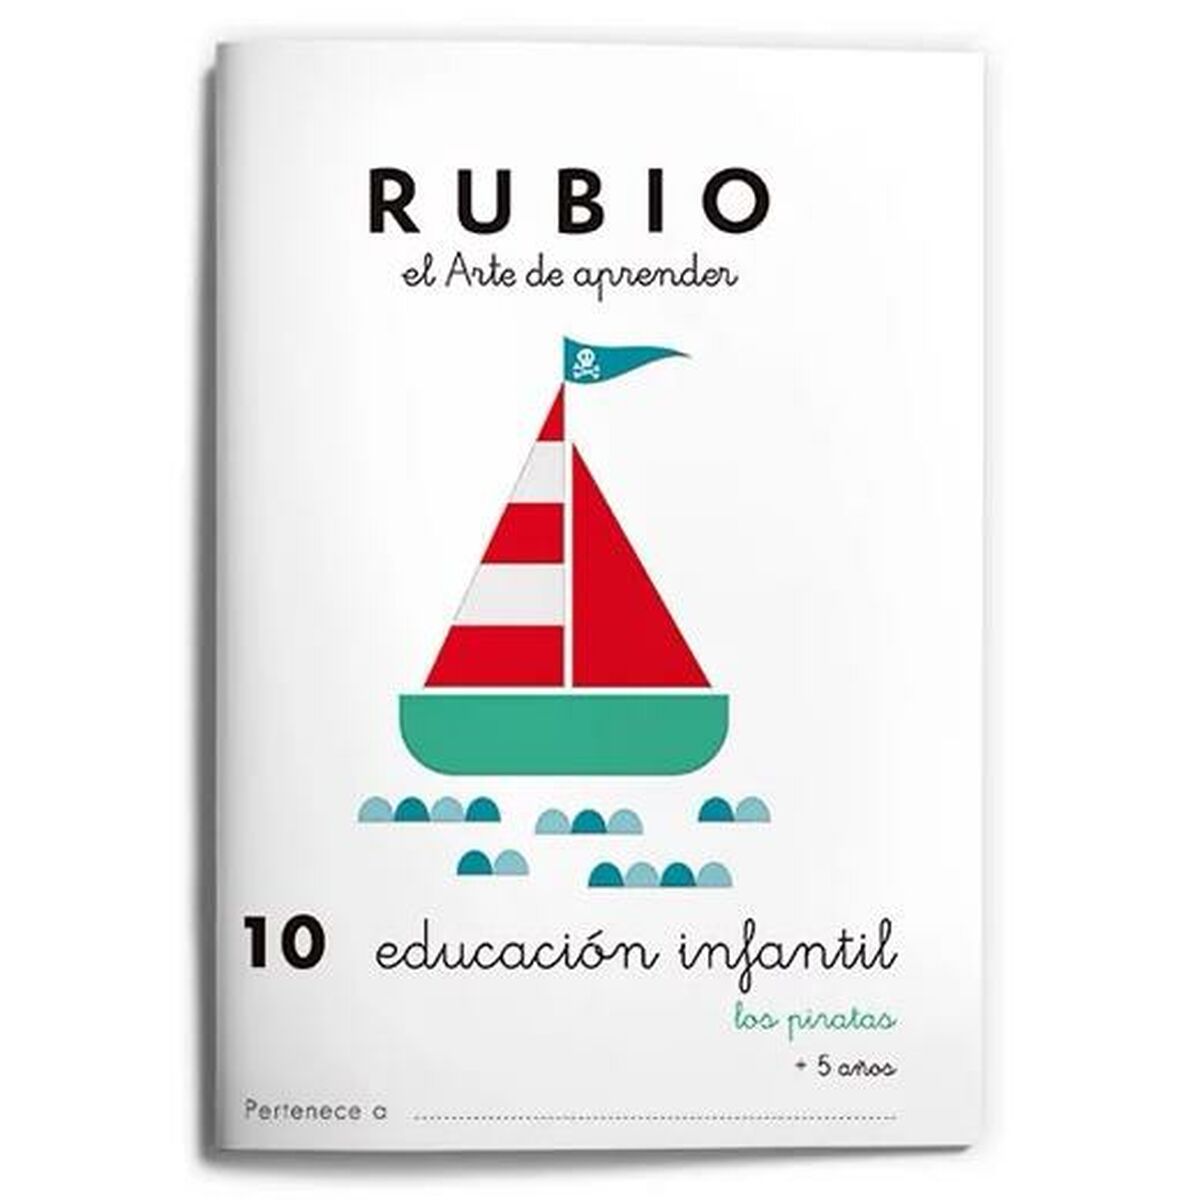 Carnet de notes sur l'éducation de la petite enfance Rubio Nº10 A5 Espagnol (10 Unités)